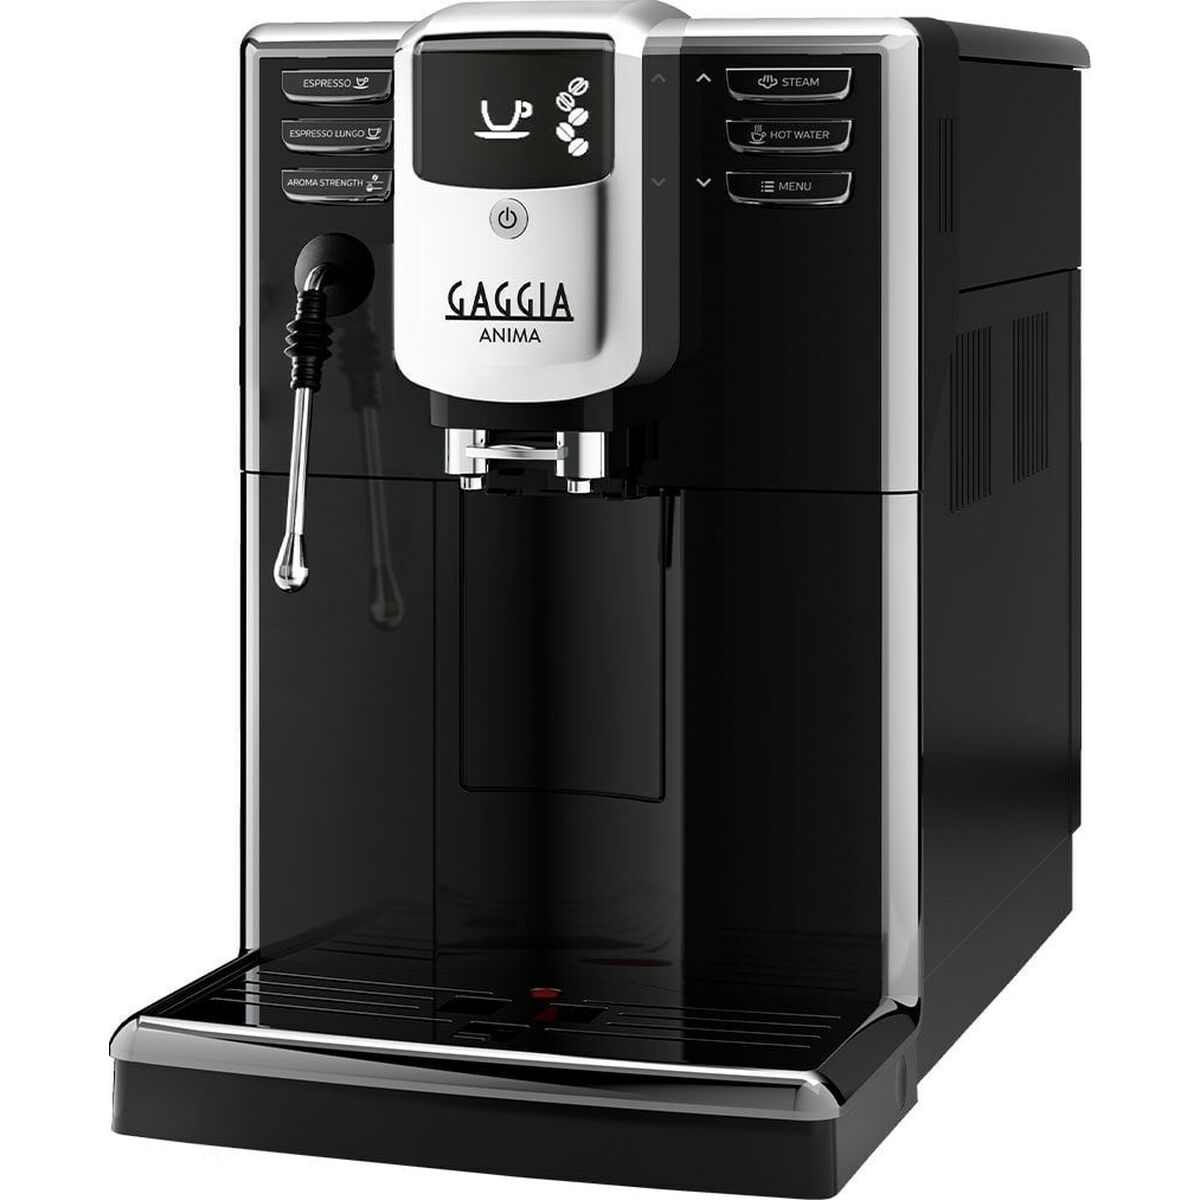 Superautomatische Kaffeemaschine Gaggia Anima CMF Barista Plus Schwarz Silberfarben 1850 W 15 bar 250 g 1,8 L - CA International 